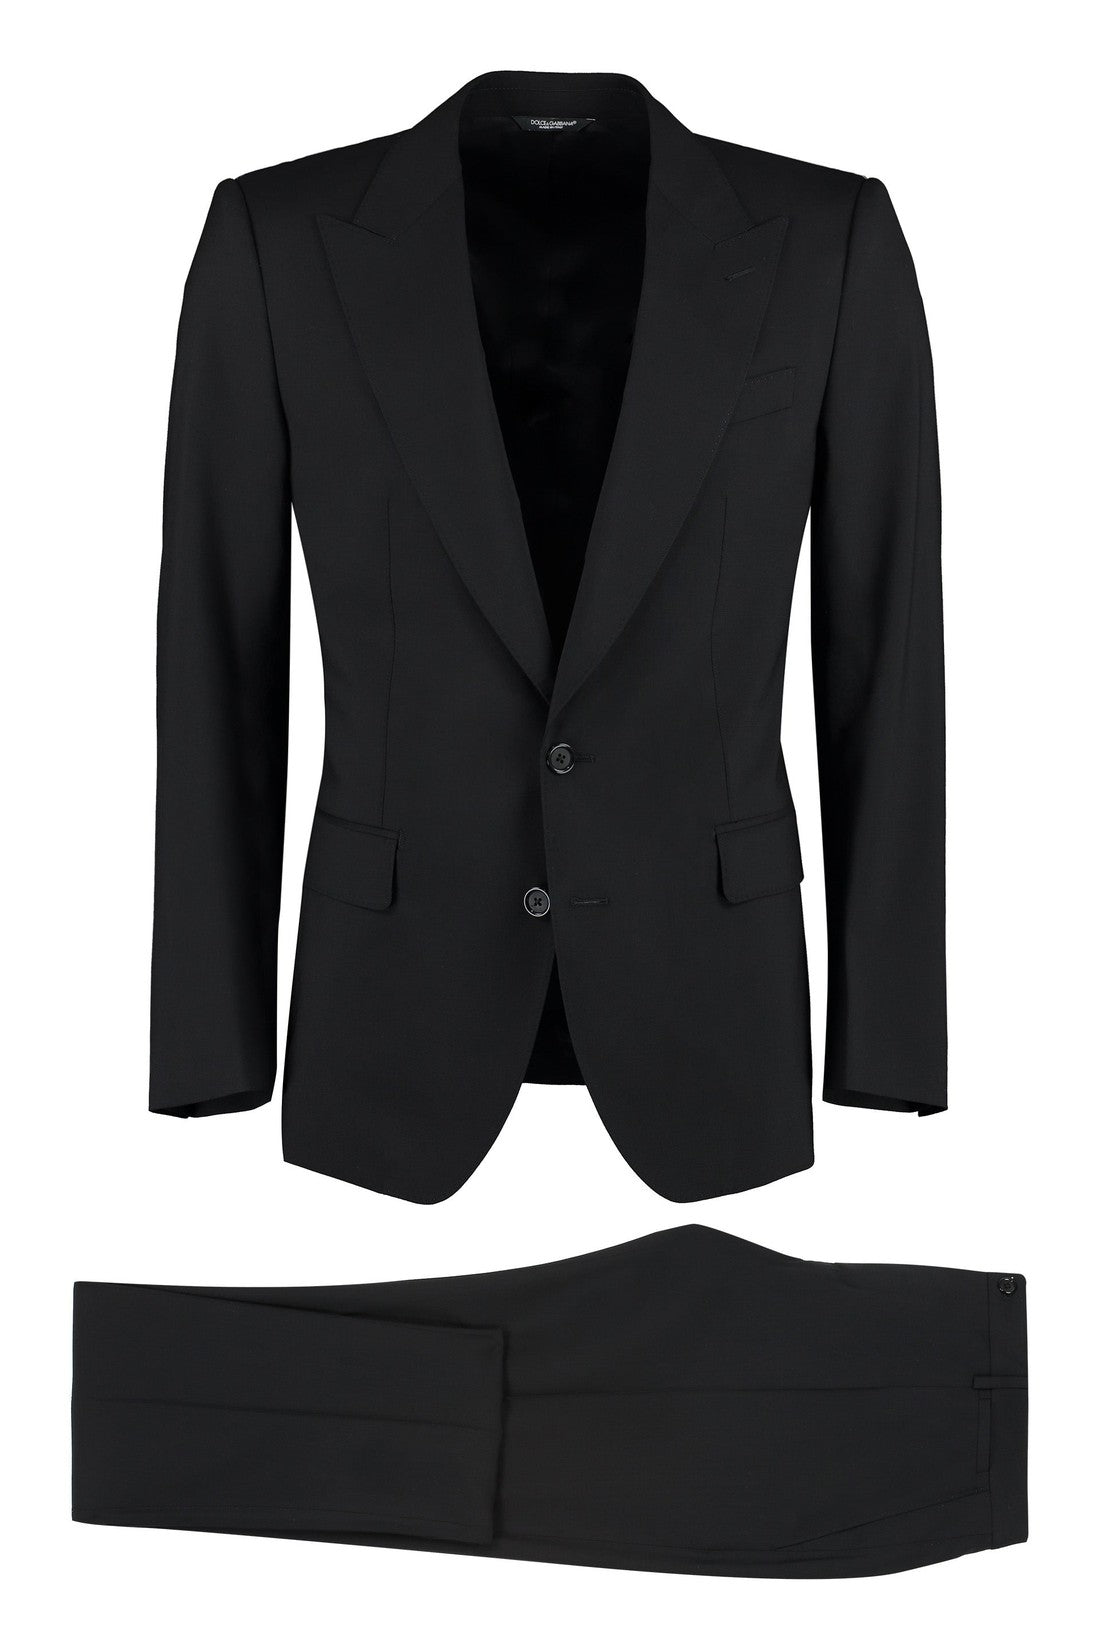 Dolce & Gabbana-OUTLET-SALE-Sicilia wool two-pieces suit-ARCHIVIST